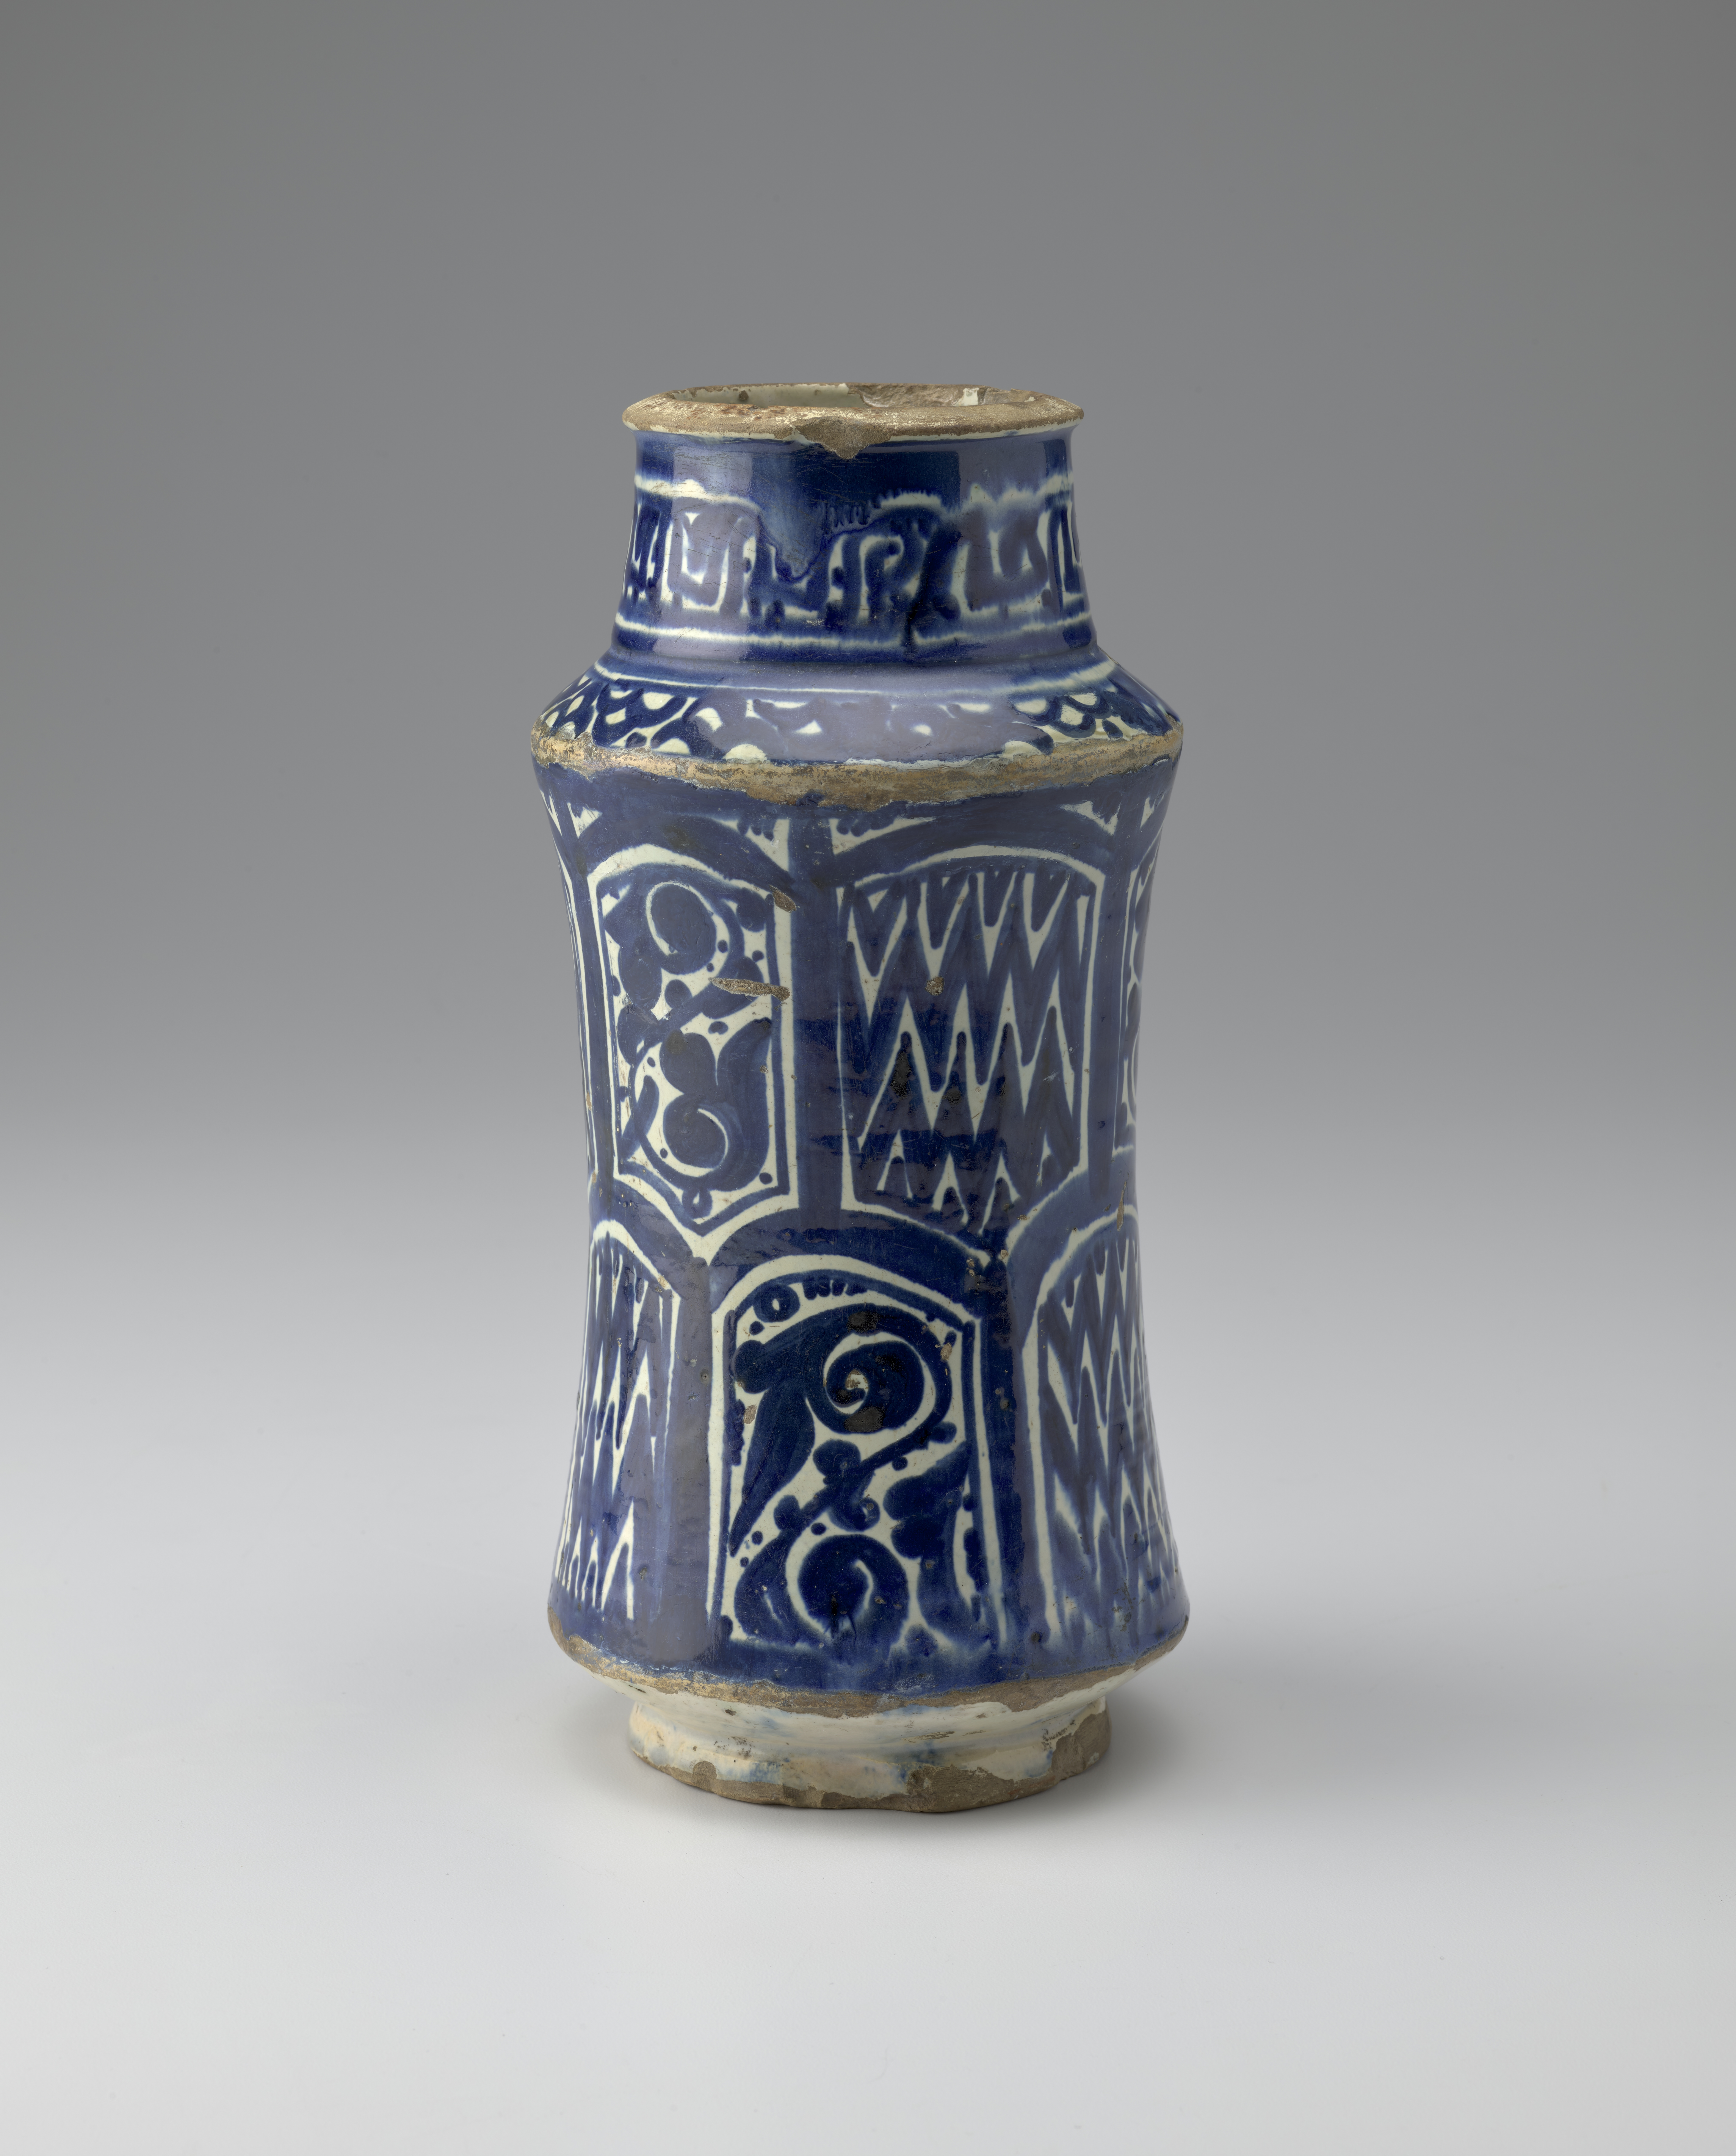 Jarra de cerámica azul y blanca decorada con motivos florales y de chevron.